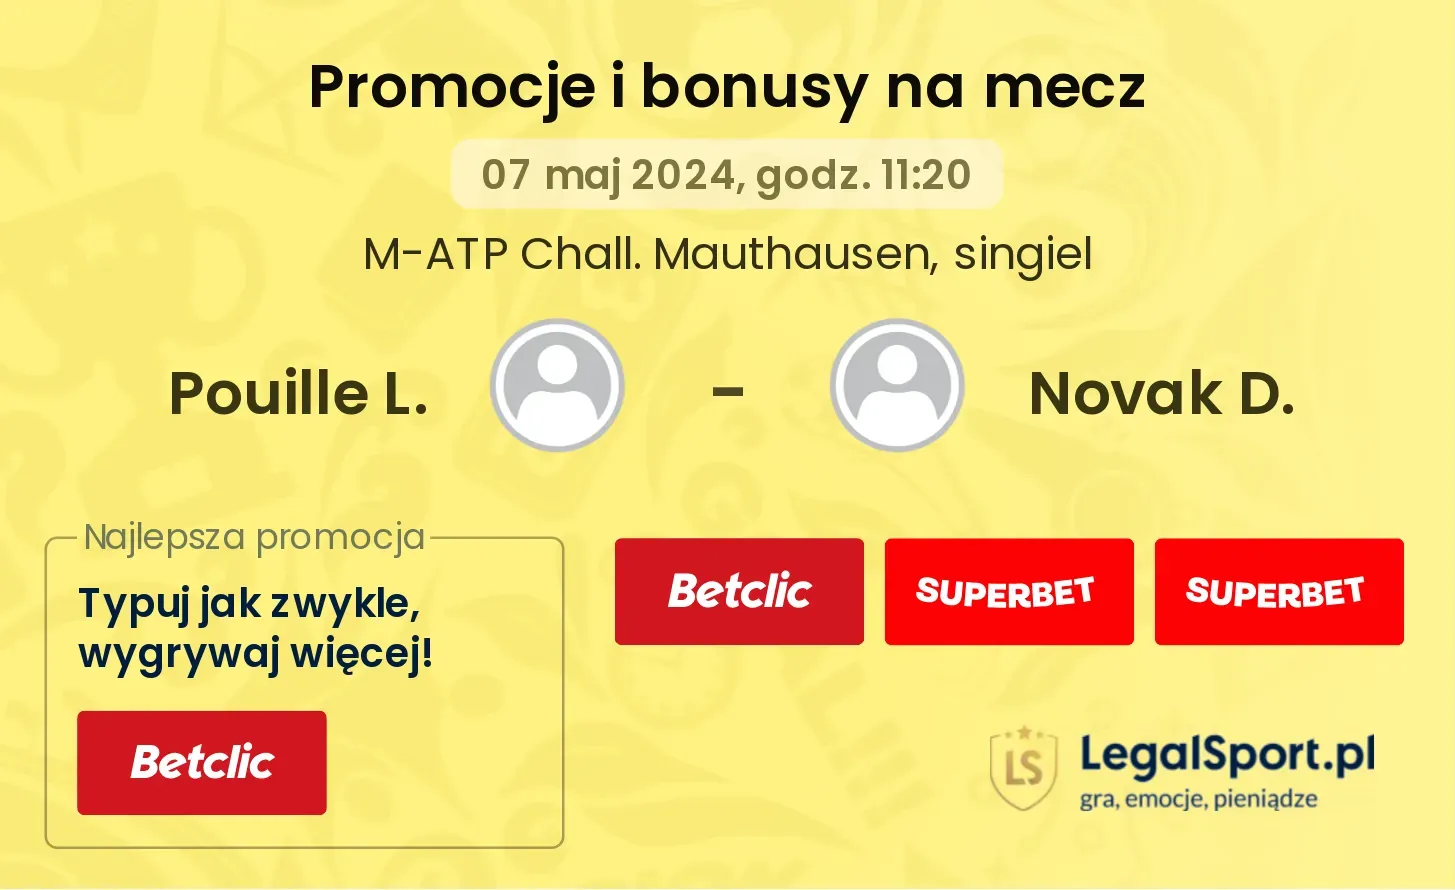 Pouille L. - Novak D. promocje bonusy na mecz